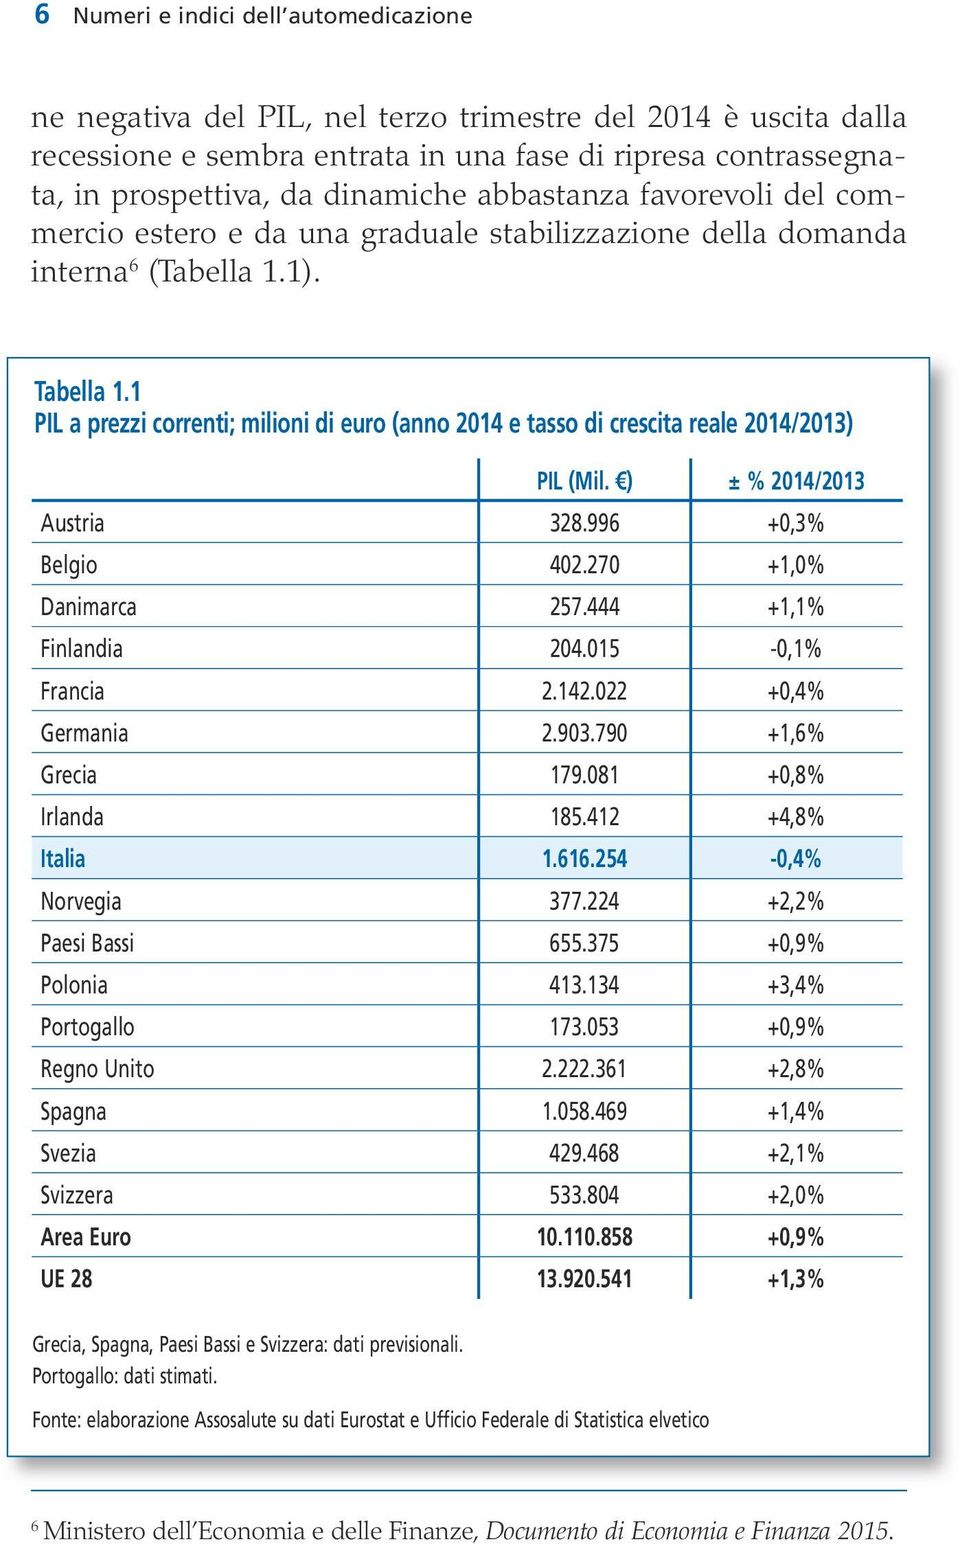 1 PIL a prezzi correnti; milioni di euro (anno 2014 e tasso di crescita reale 2014/2013) PIL (Mil. ) ± % 2014/2013 Austria 328.996 +0,3% Belgio 402.270 +1,0% Danimarca 257.444 +1,1% Finlandia 204.